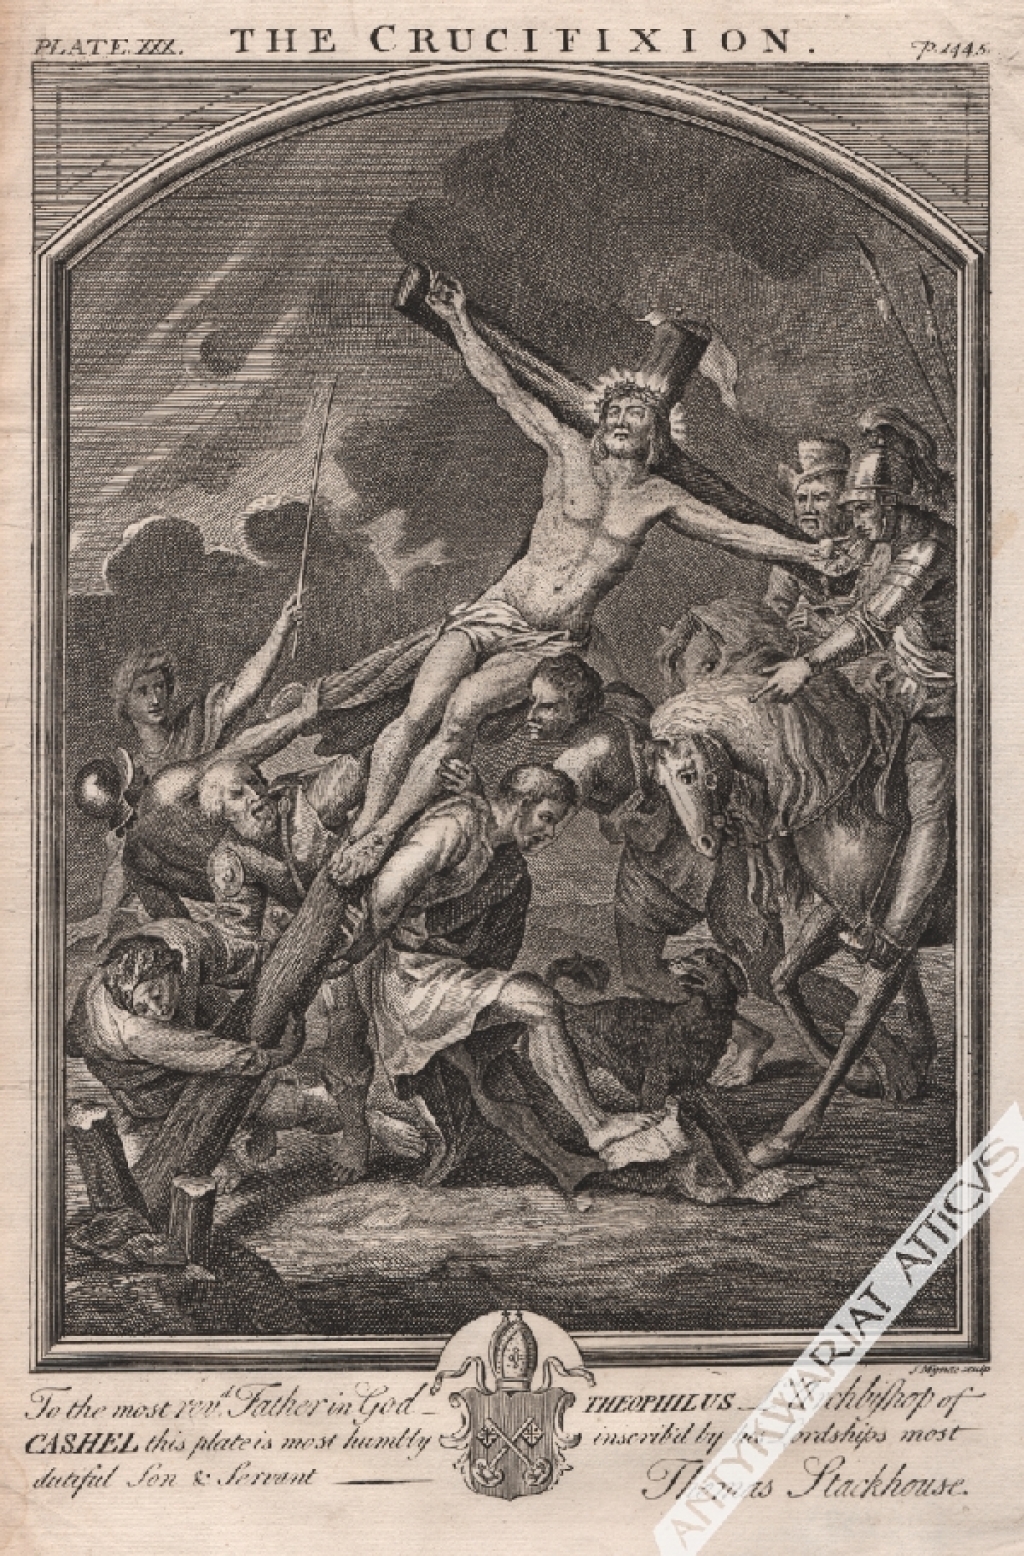 [rycina, 1764] The Crucifixion [Ukrzyżowanie]